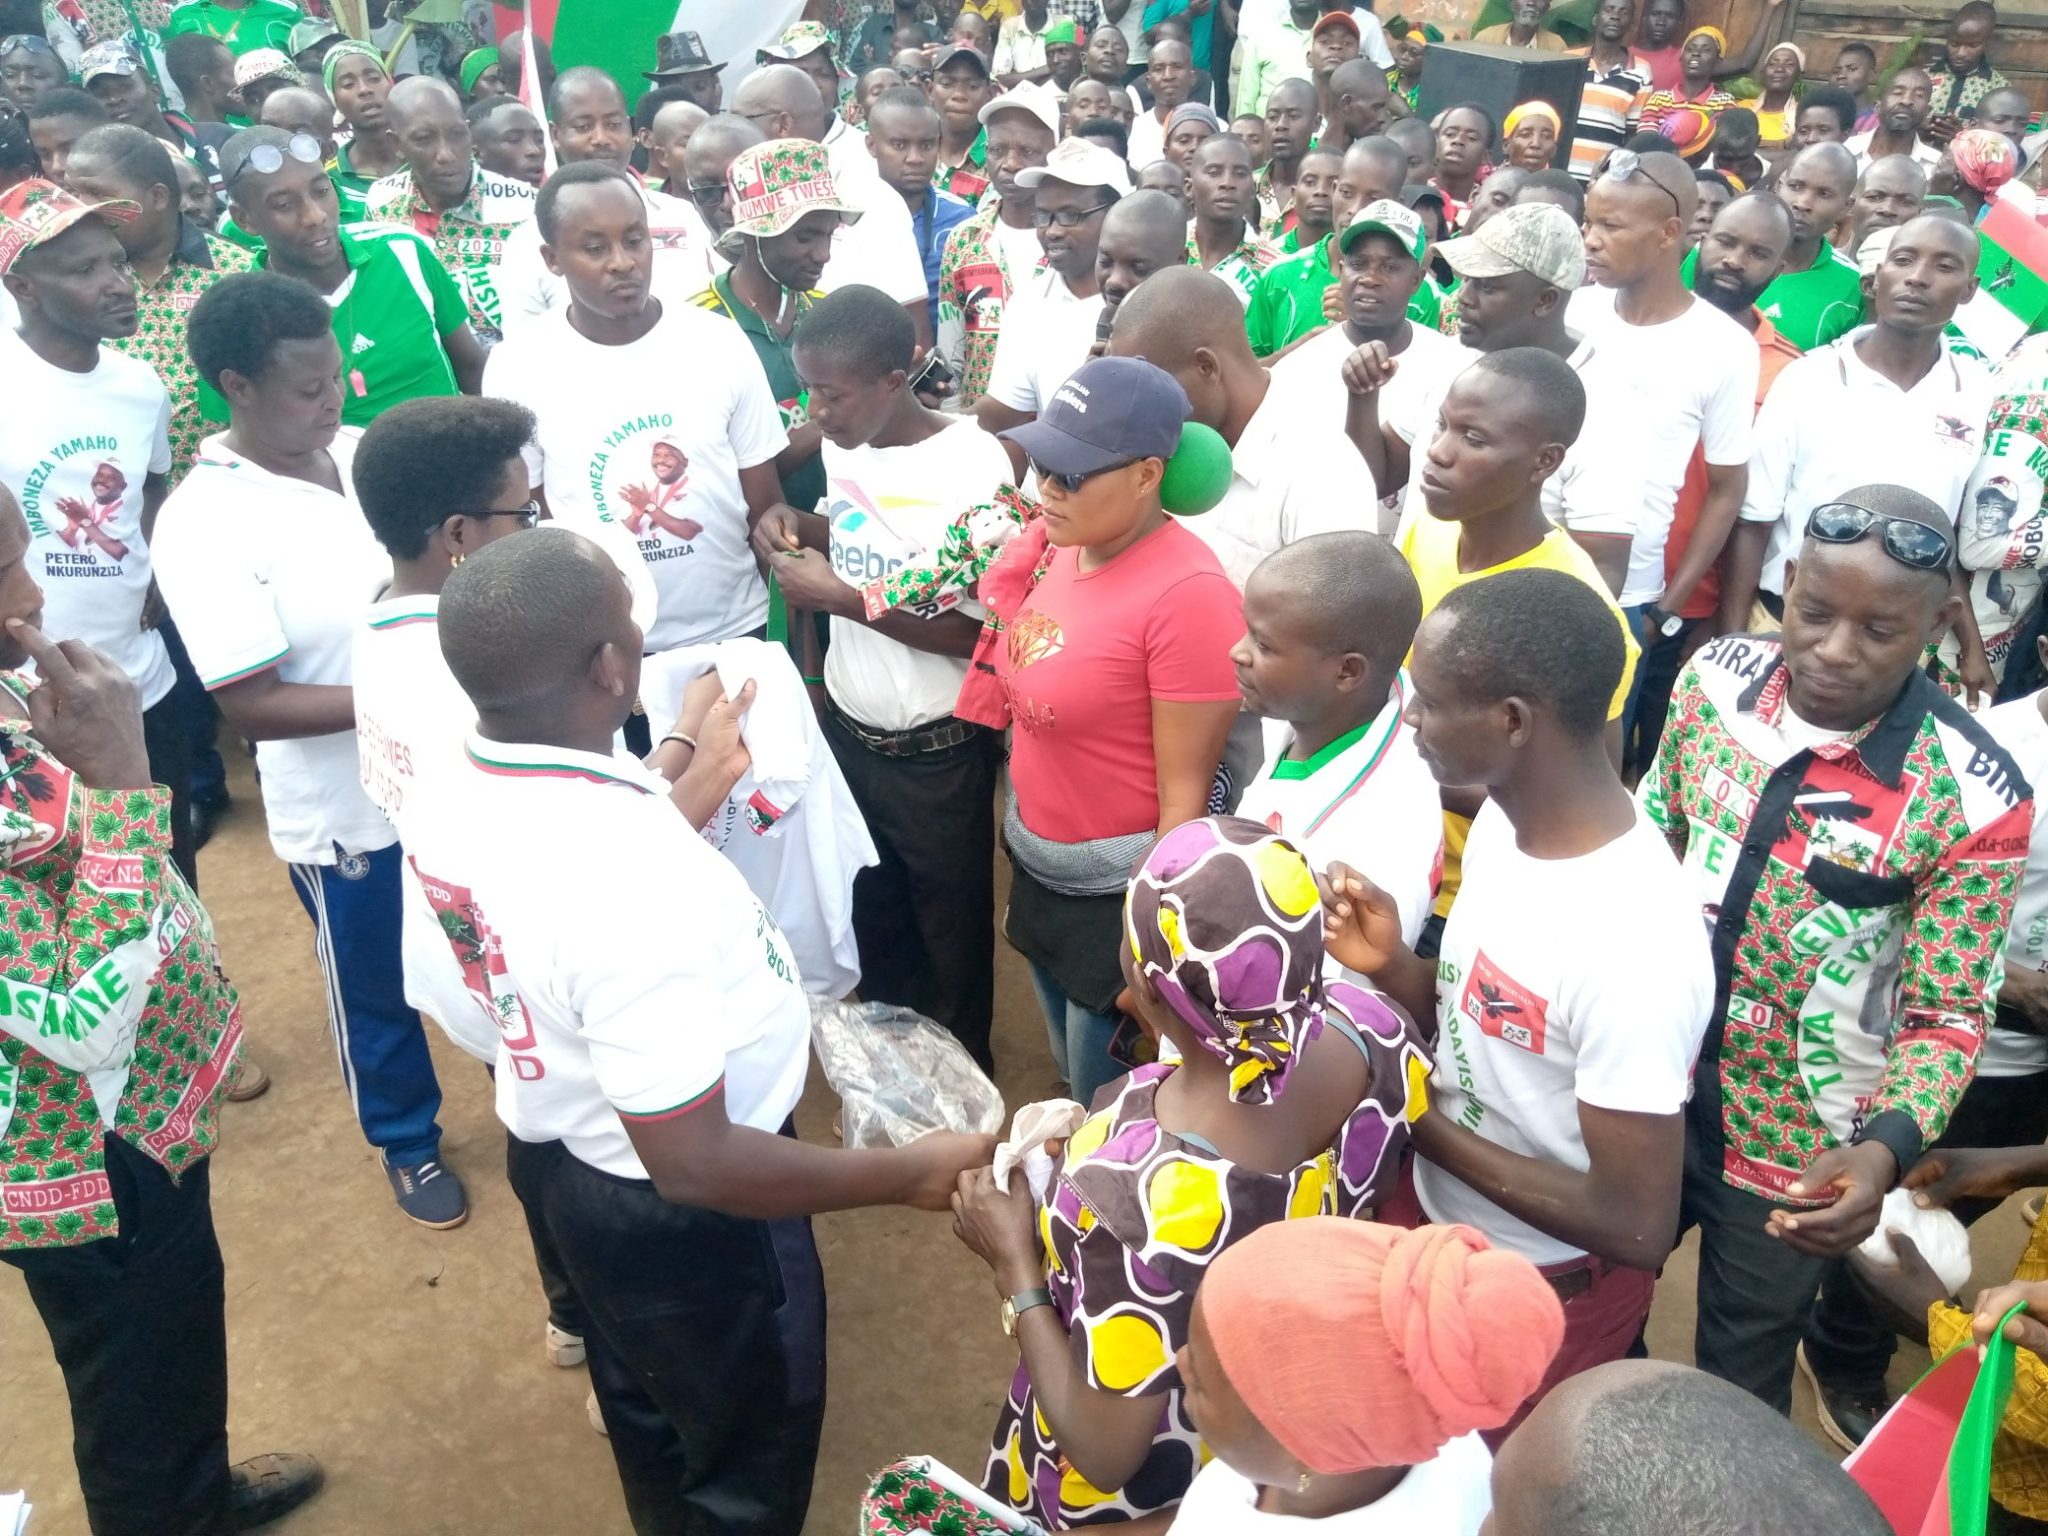 BURUNDI : Le CNDD-FDD RUYIGI reçoit 303 nouveaux militants avec beaucoup de CNL